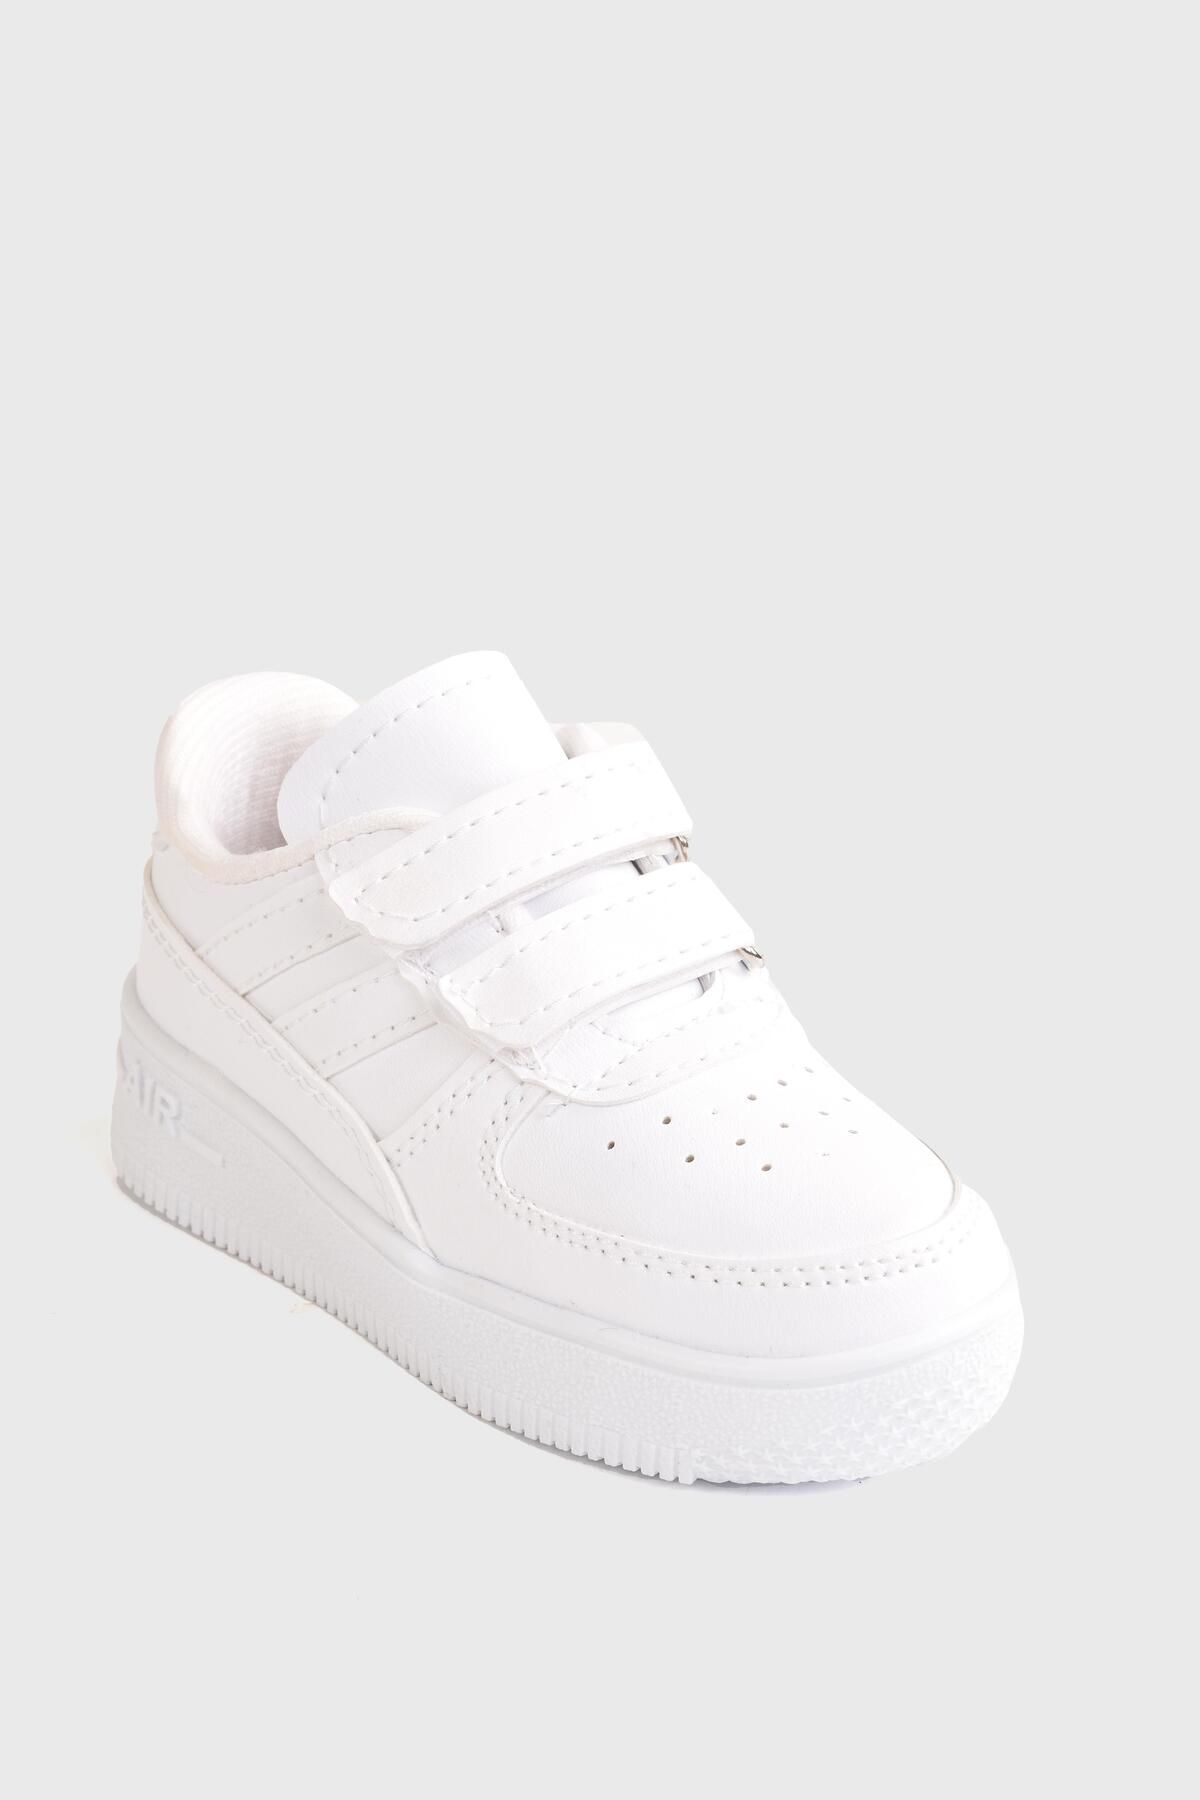 MODAONN Günlük Unisex Çocuk Şeritli Beyaz Sneaker Cırtlı Hafif Rahat Spor Ayakkabı